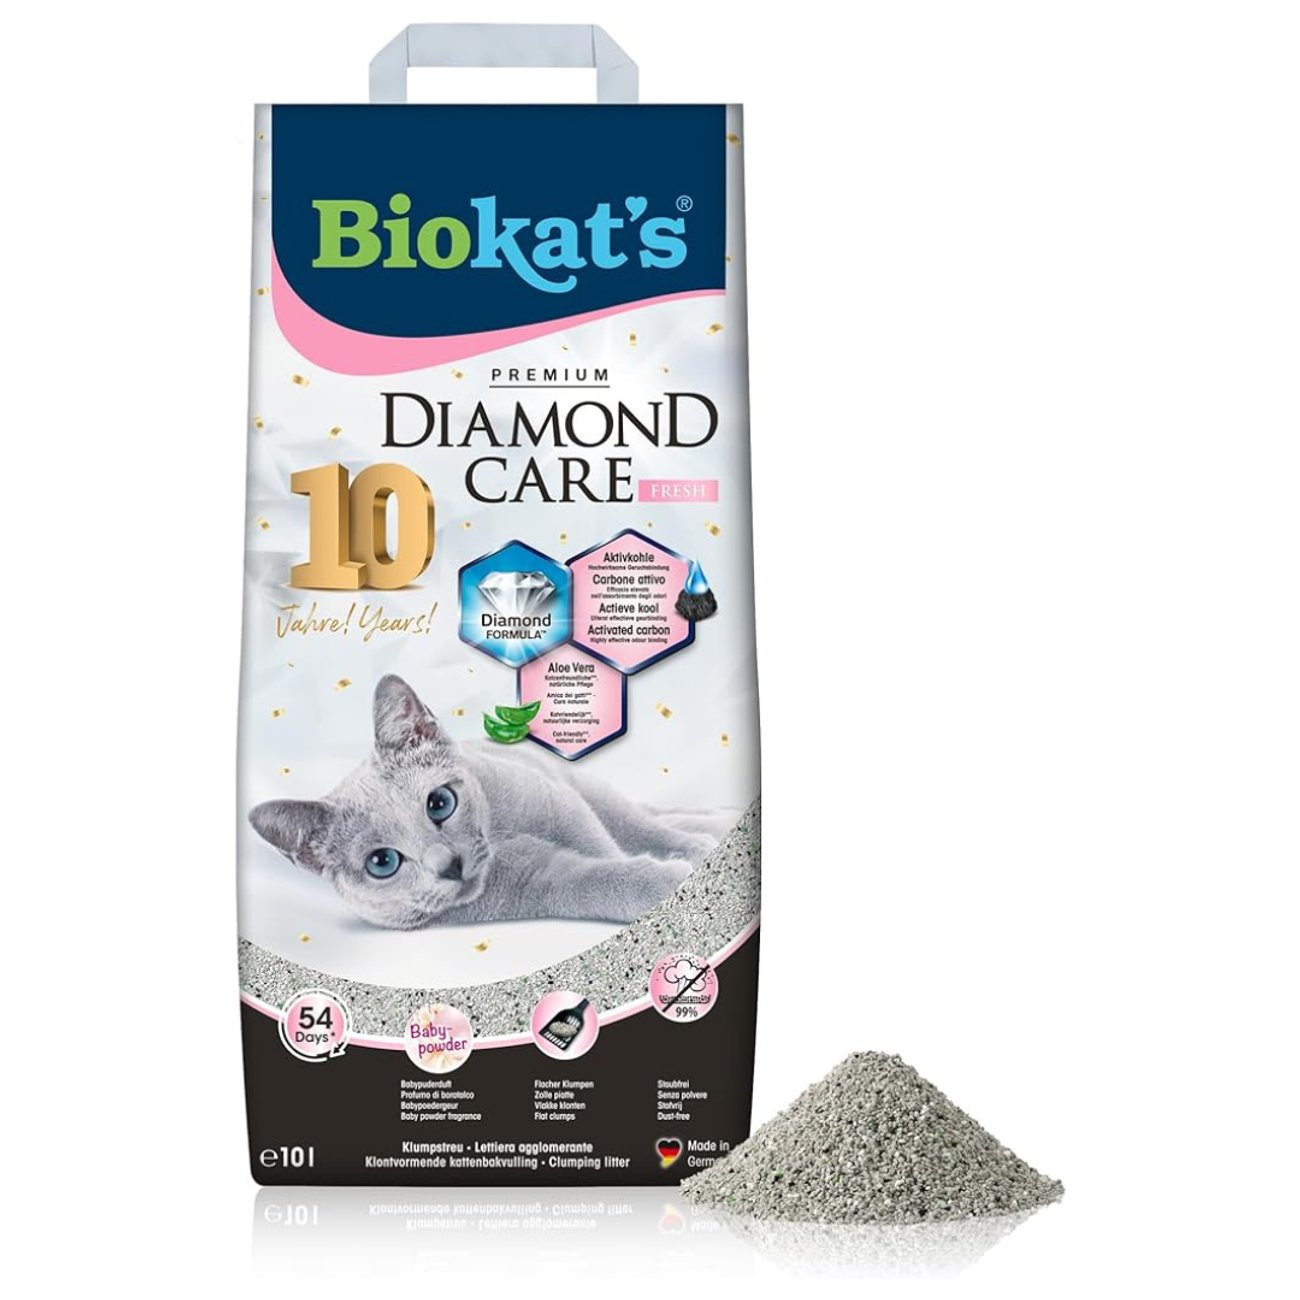 Biokat's: Katzenstreu mit Babypuder-Duft